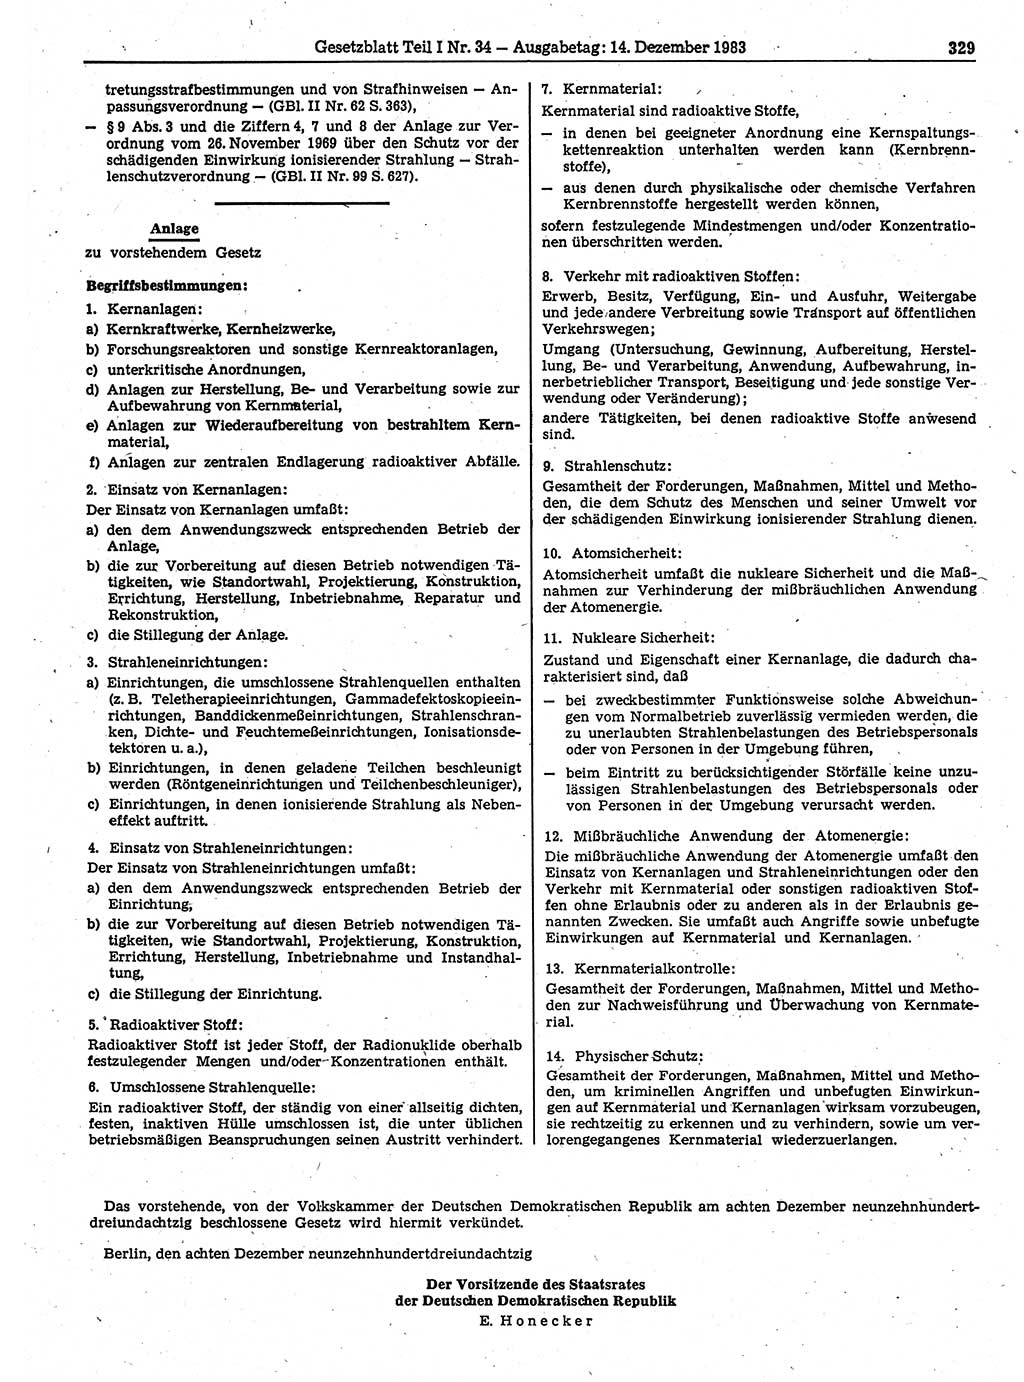 Gesetzblatt (GBl.) der Deutschen Demokratischen Republik (DDR) Teil Ⅰ 1983, Seite 329 (GBl. DDR Ⅰ 1983, S. 329)